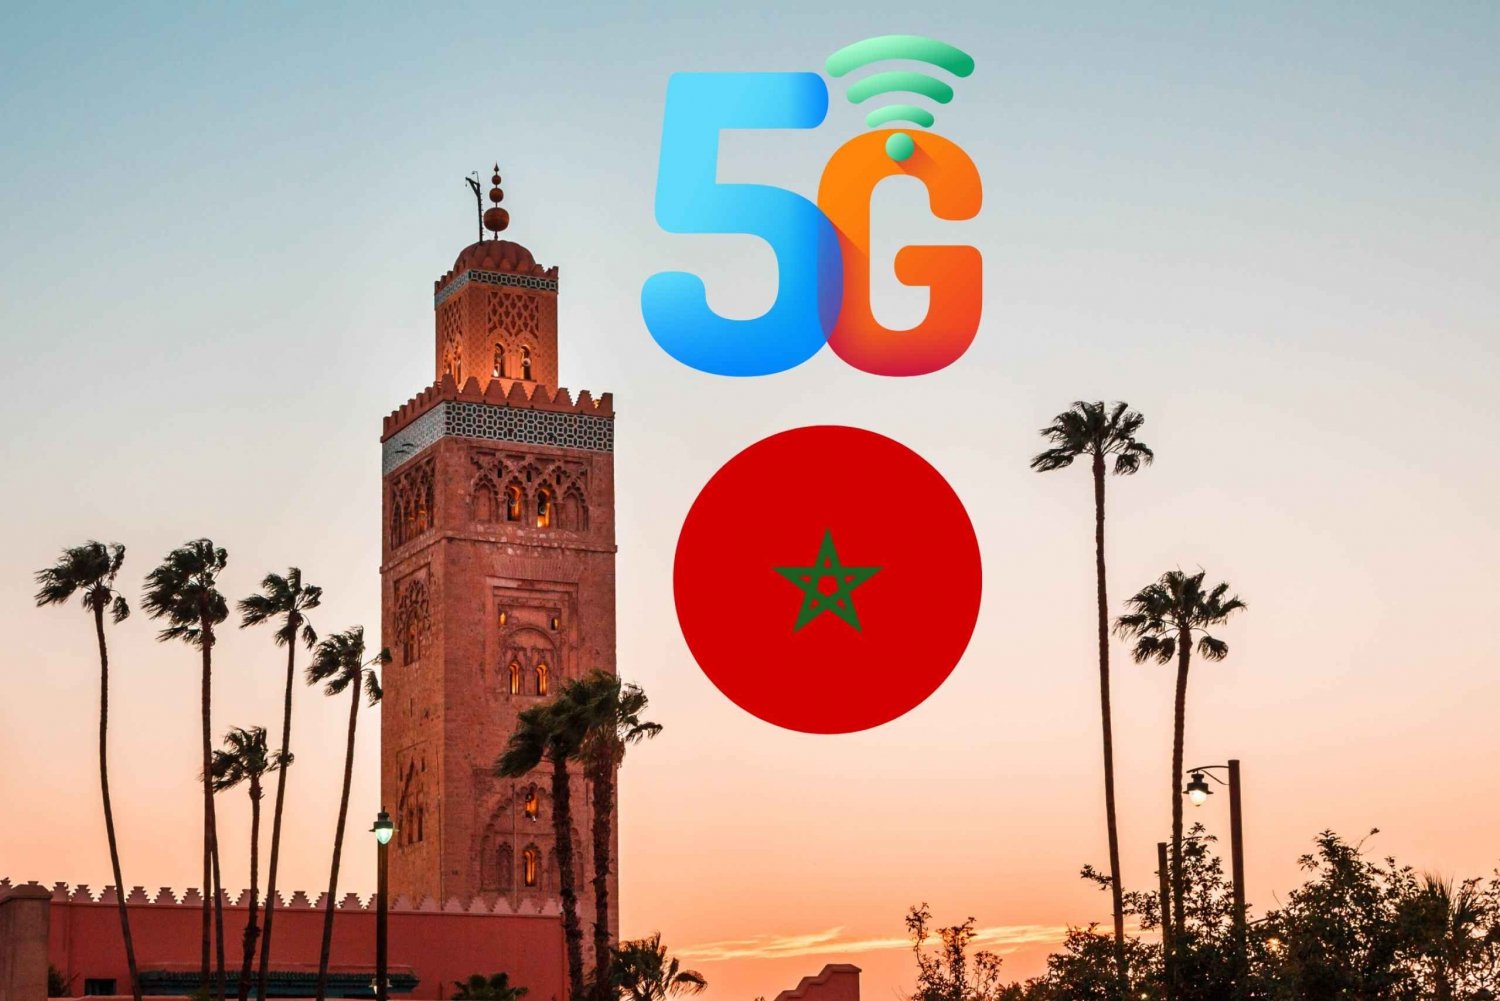 Marokko: Prepaid eSIM mobiilidatalla